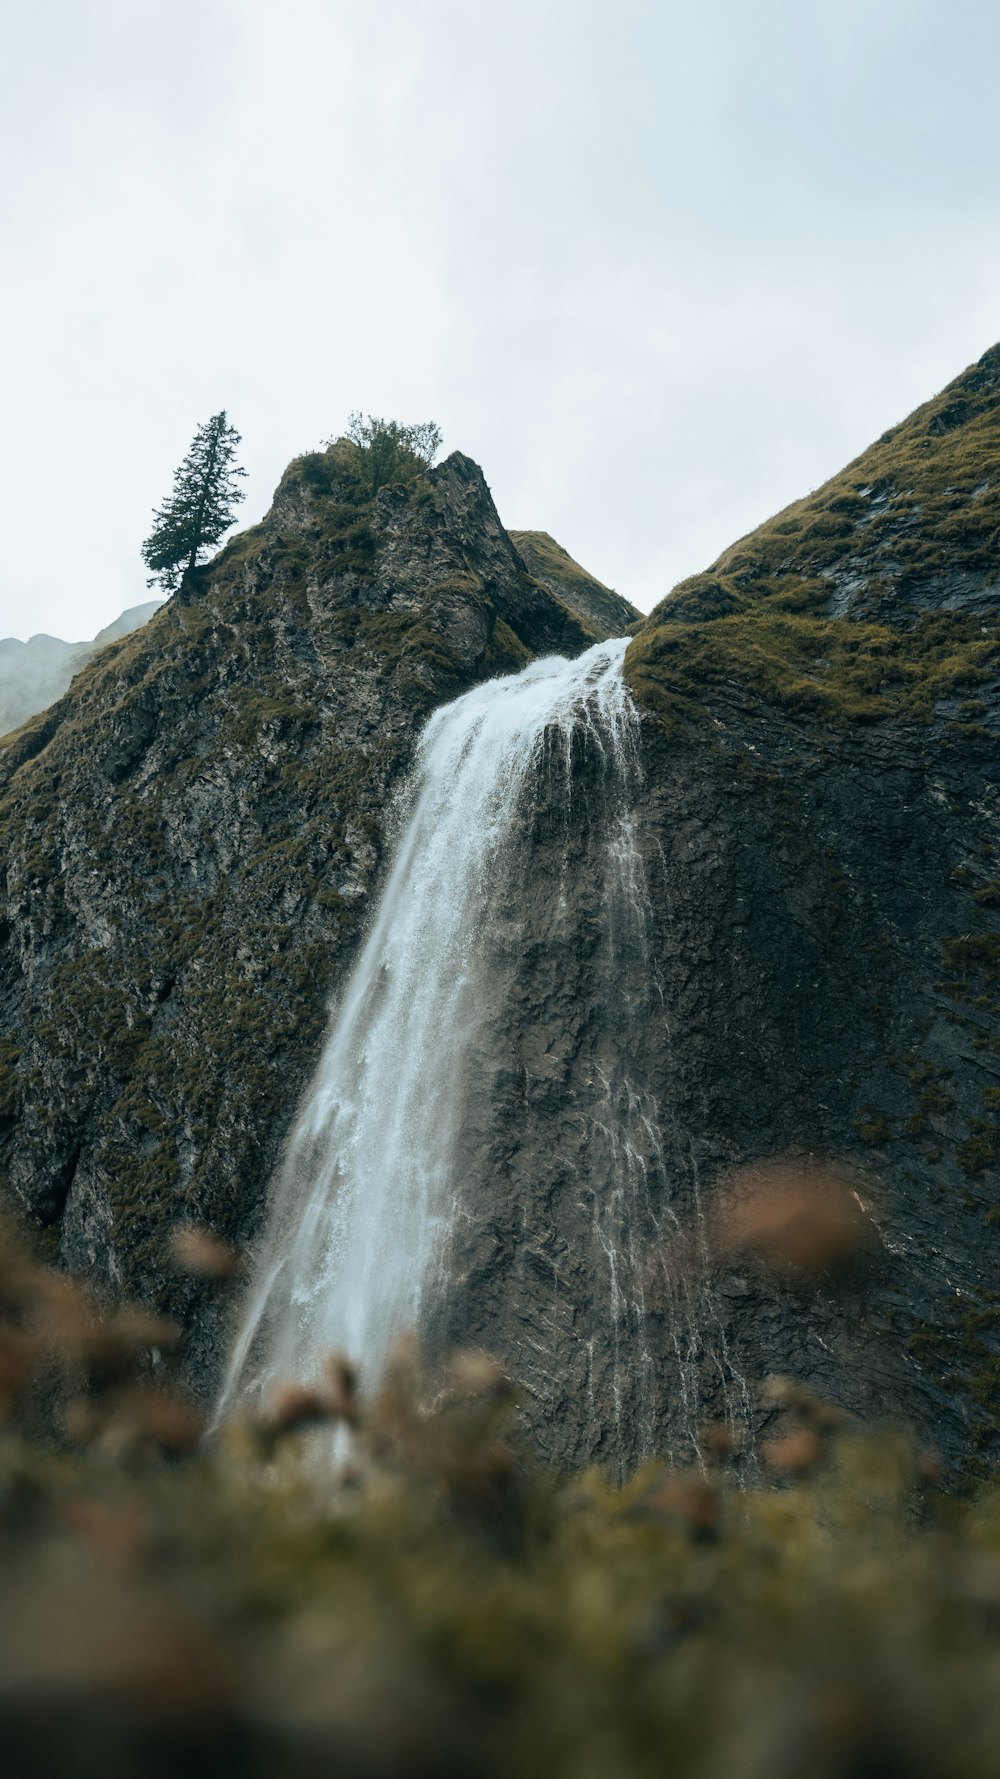 Una piccola cascata che scende a cascata lungo un fianco della montagna